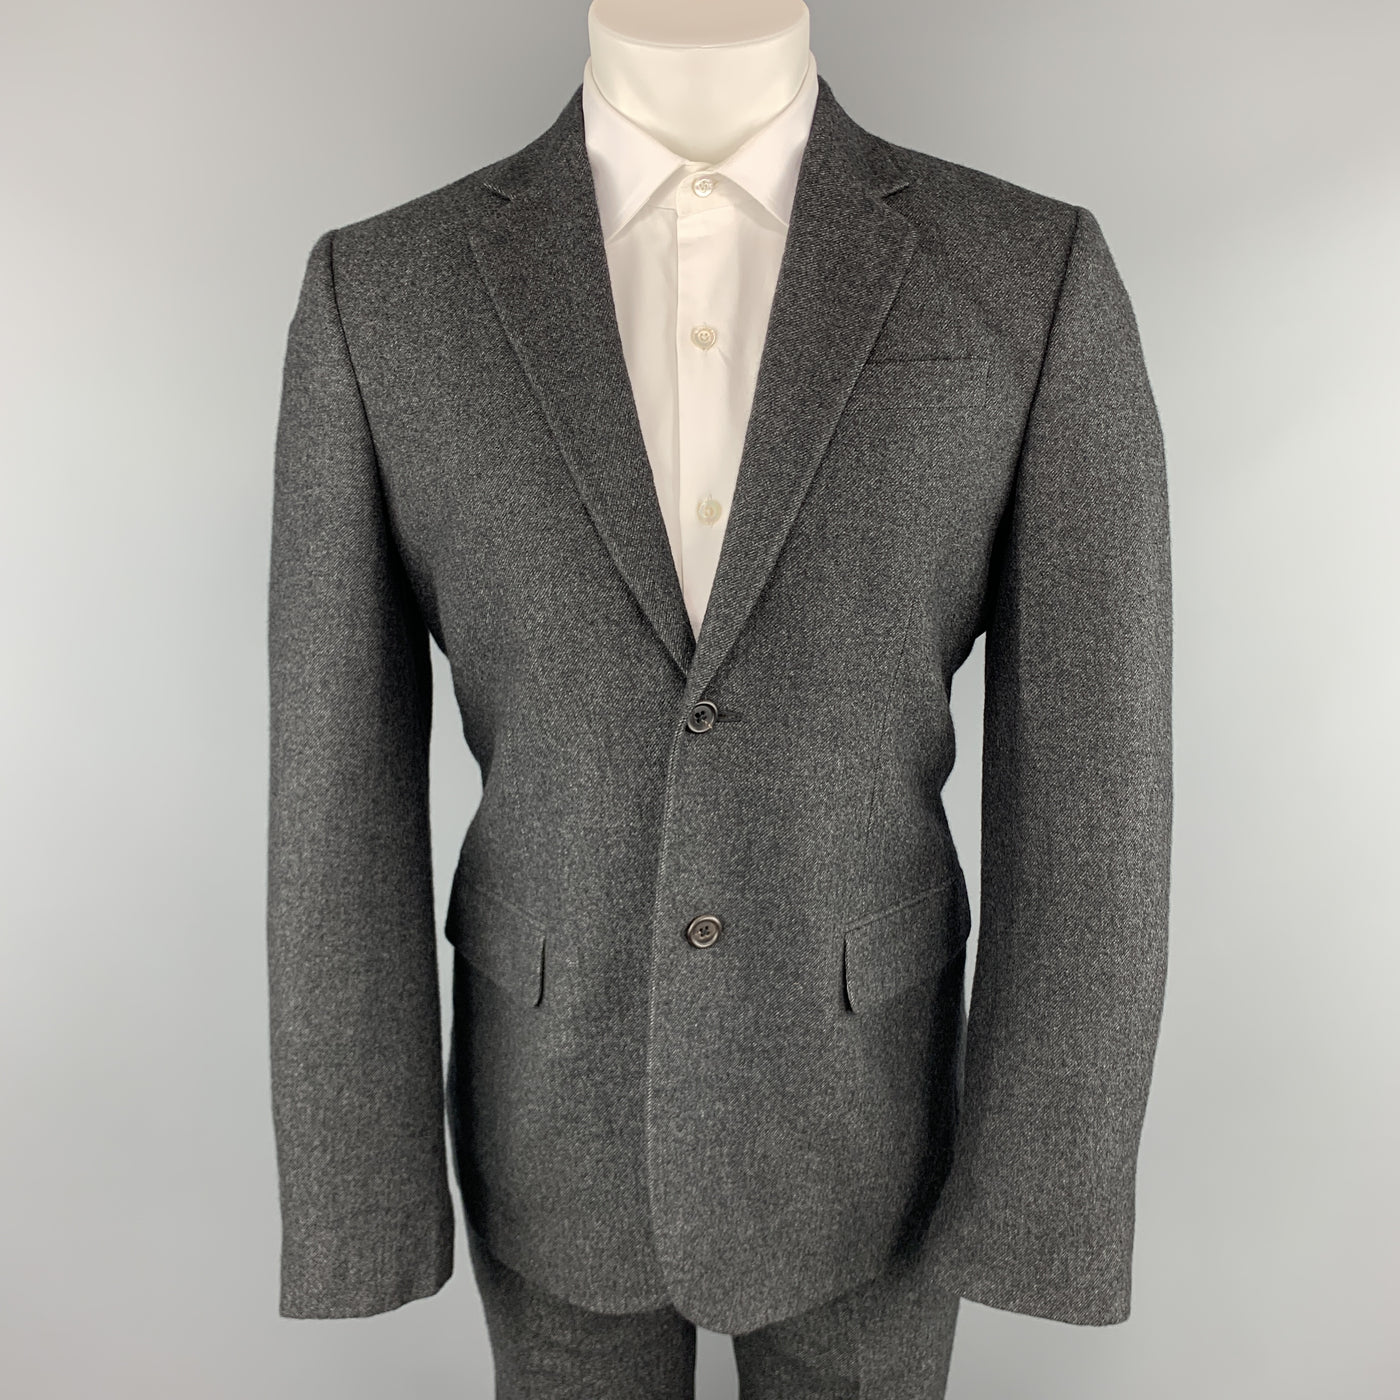 MARC JACOBS Size 38 Charcoal Textured Cashmere Notch Lapel Wide Leg Suit